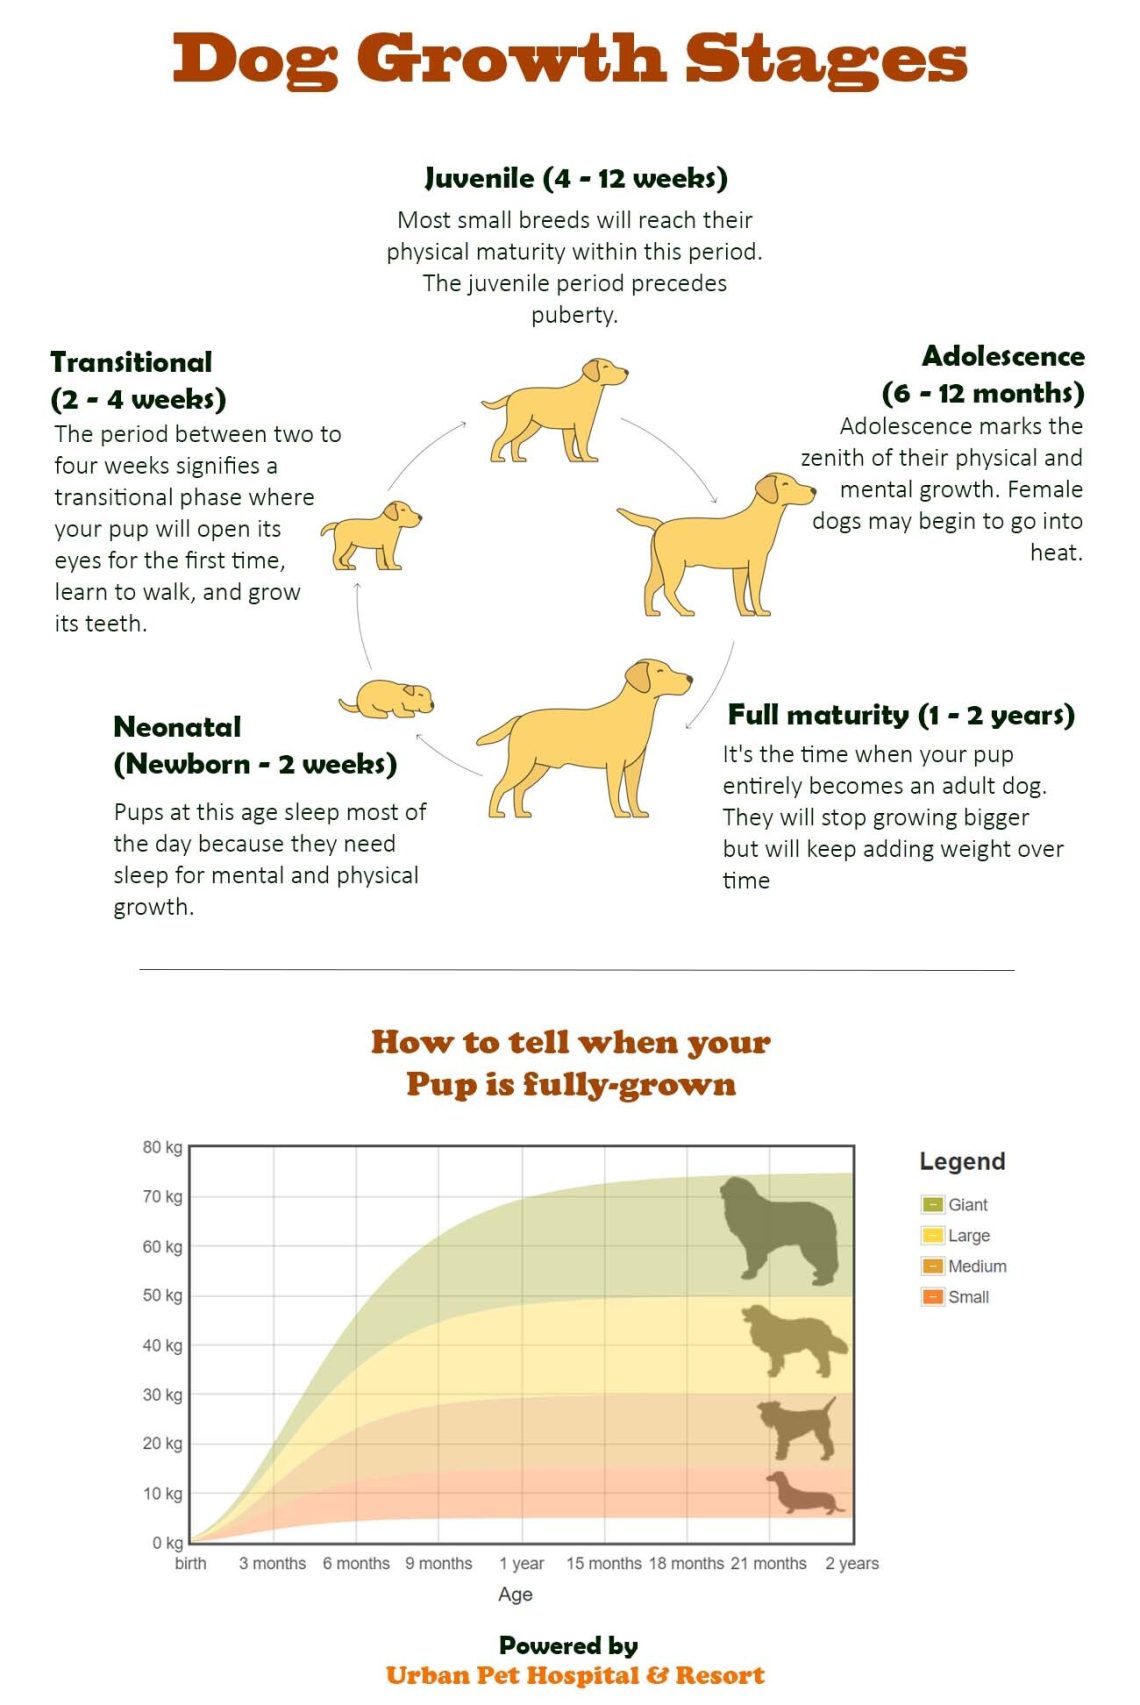 Ո՞ր տարիքից են շները դադարում աճել: